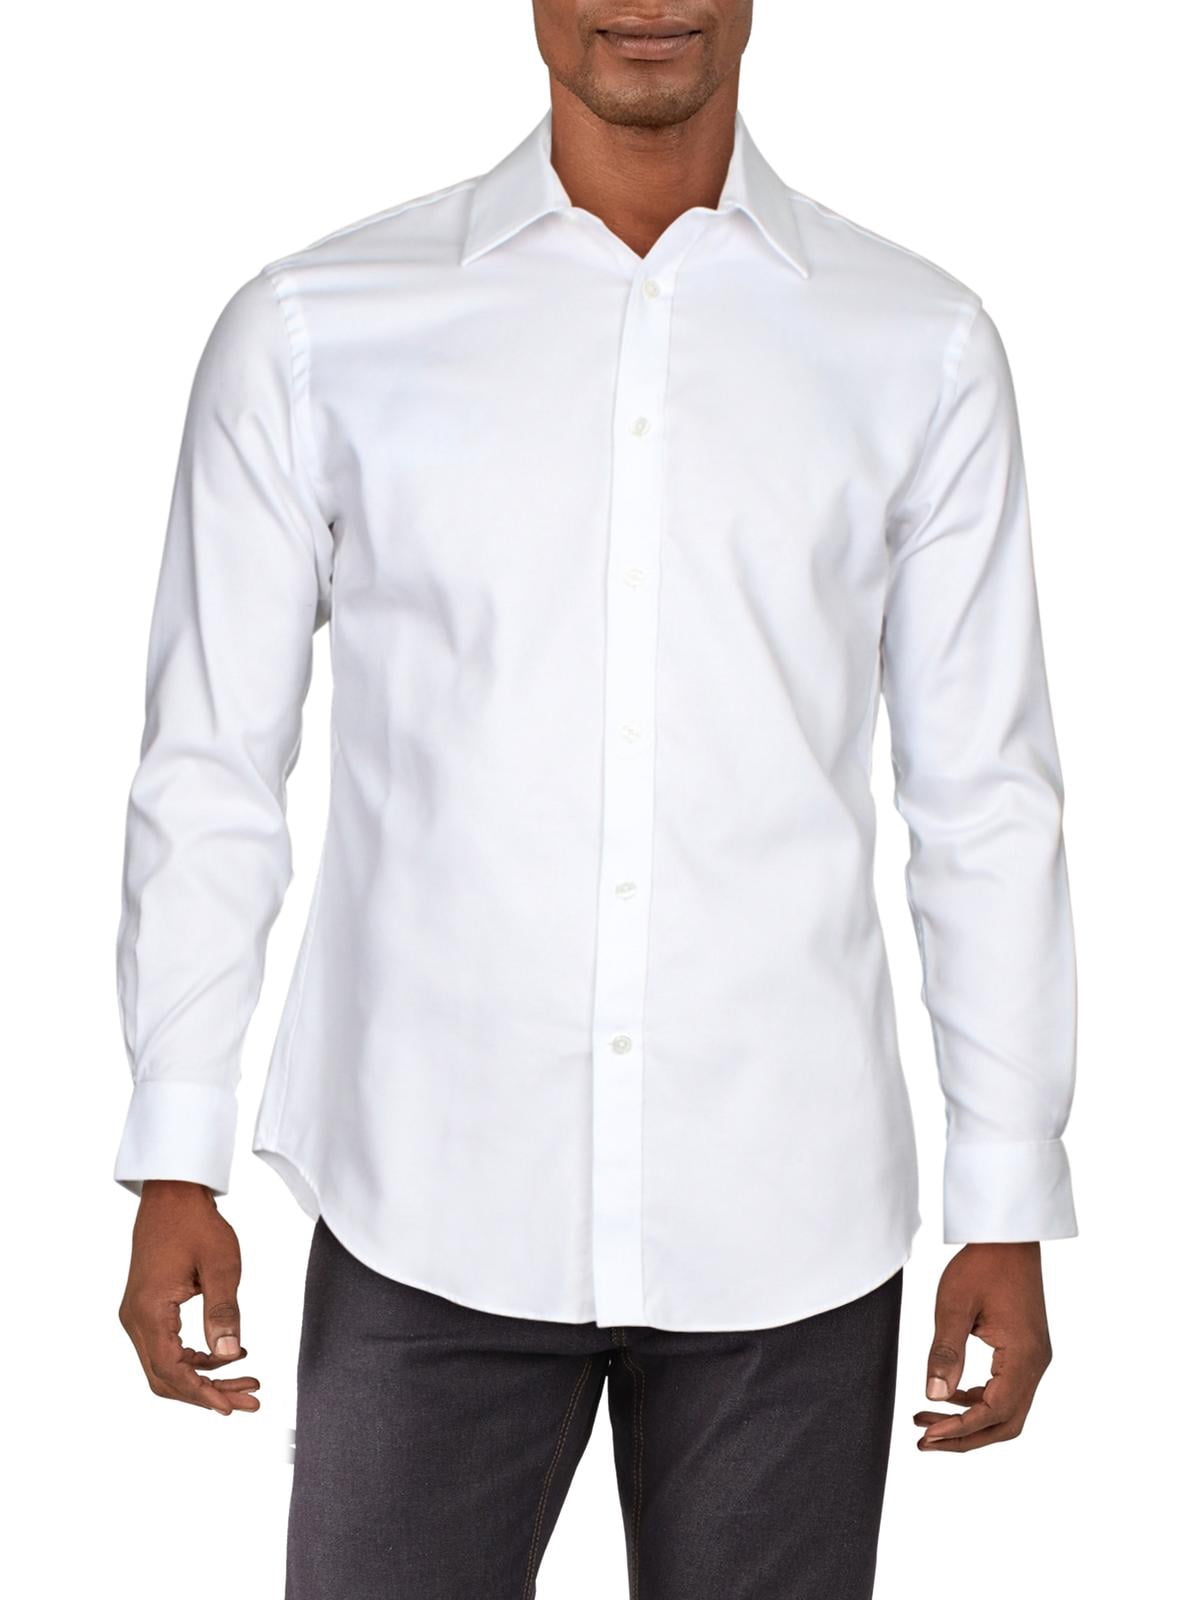 White Collared Dress Shirt 15.5- 32 ...